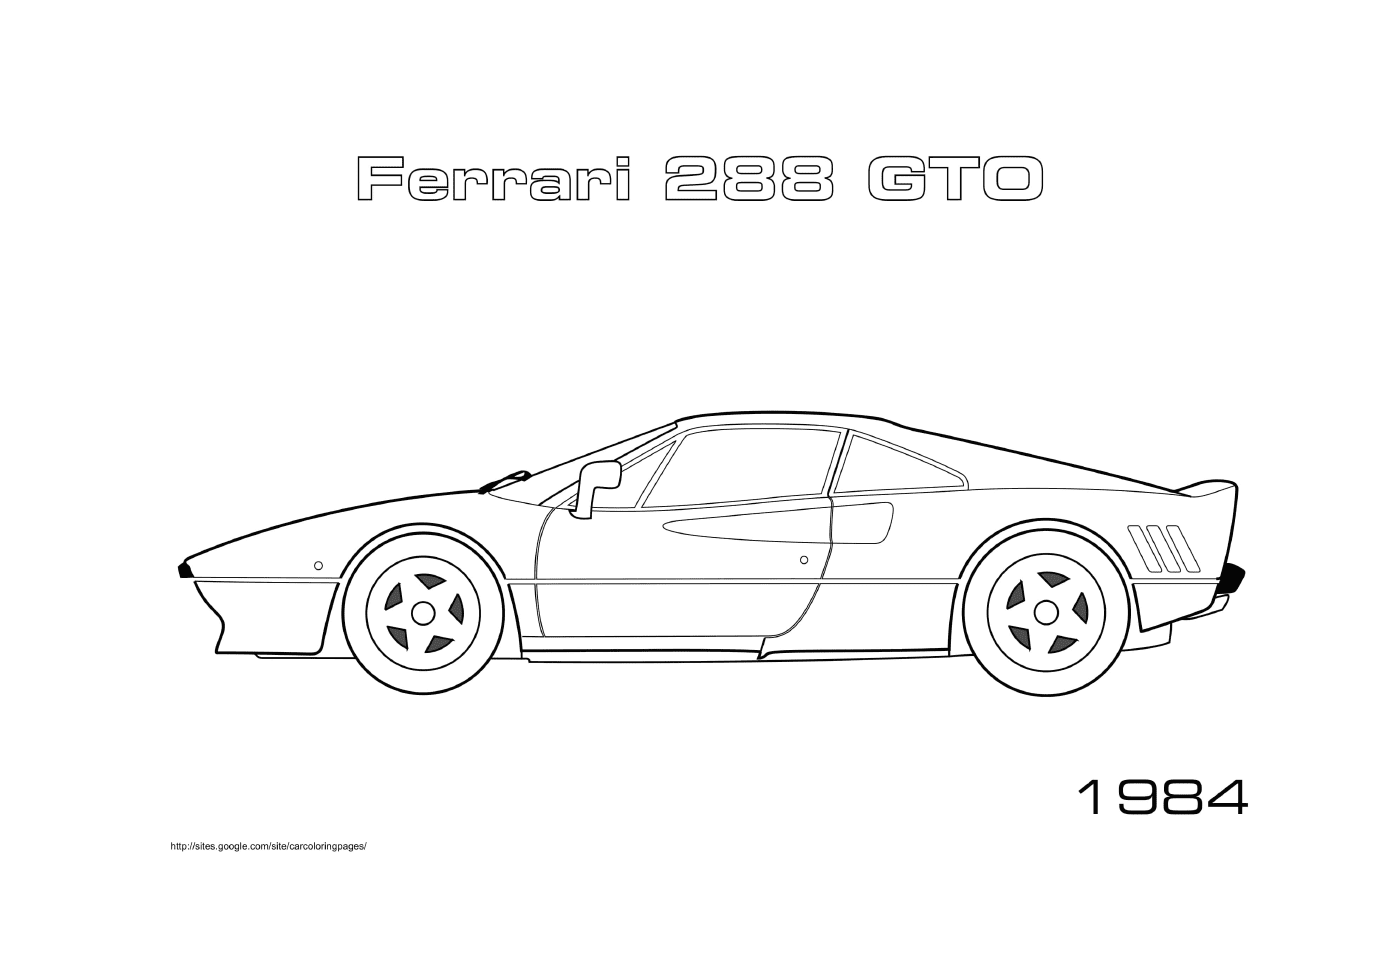  Ferrari 288 GTO 1984, coche deportivo 